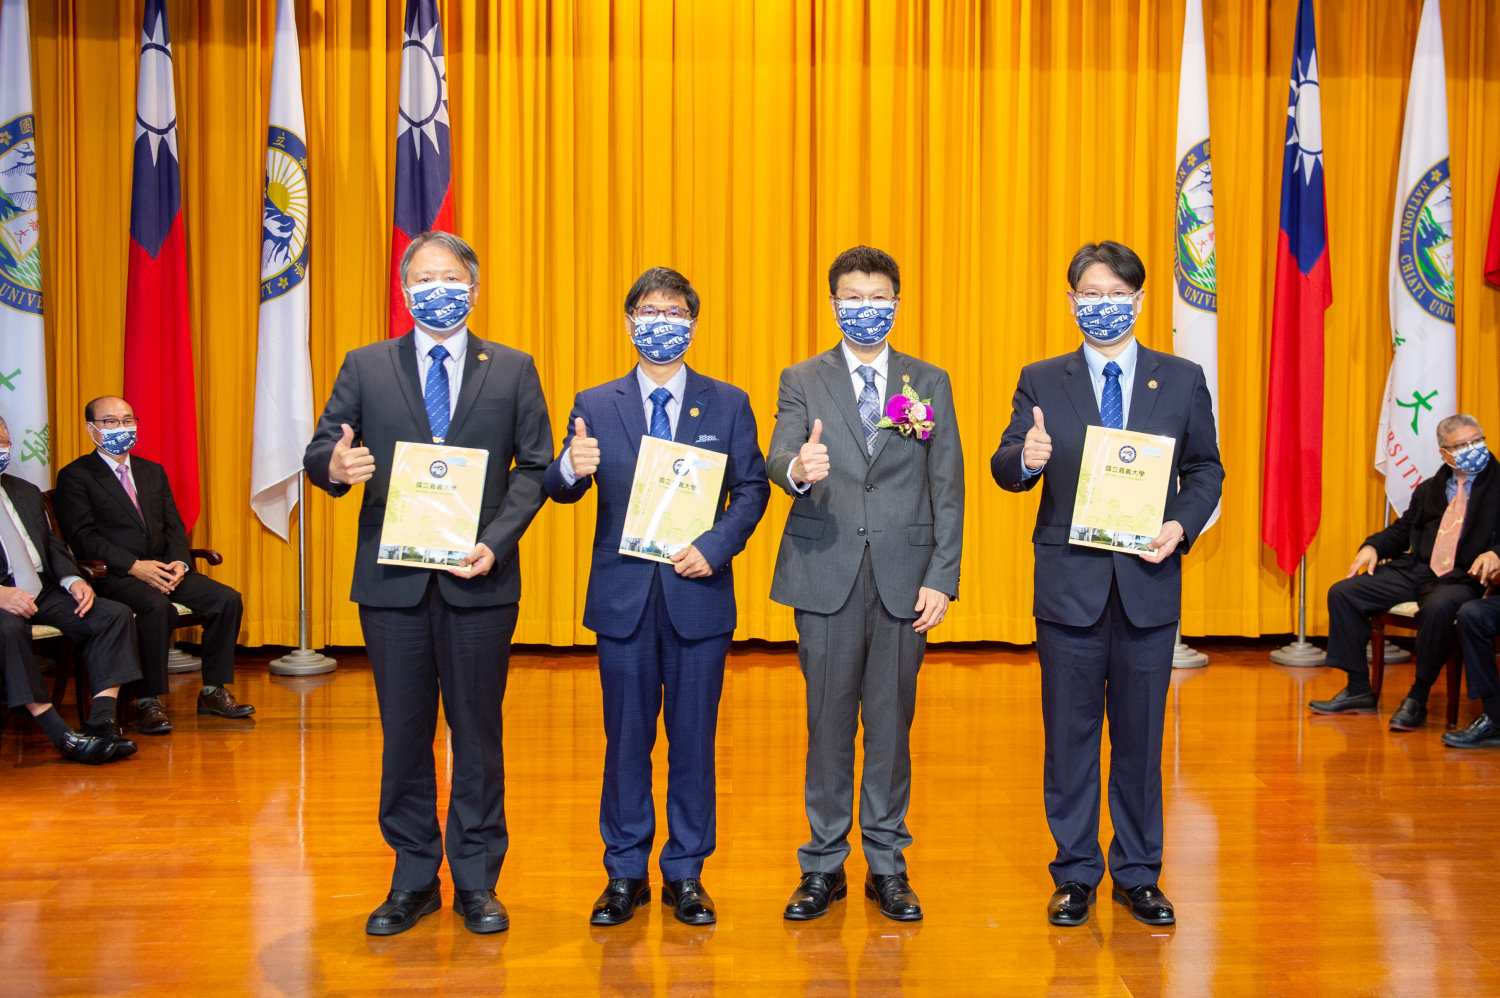 2-校長(右2)與三位副校長陳瑞祥(左1)教授、張俊賢(左2)教授、李鴻文(右1)教授合影